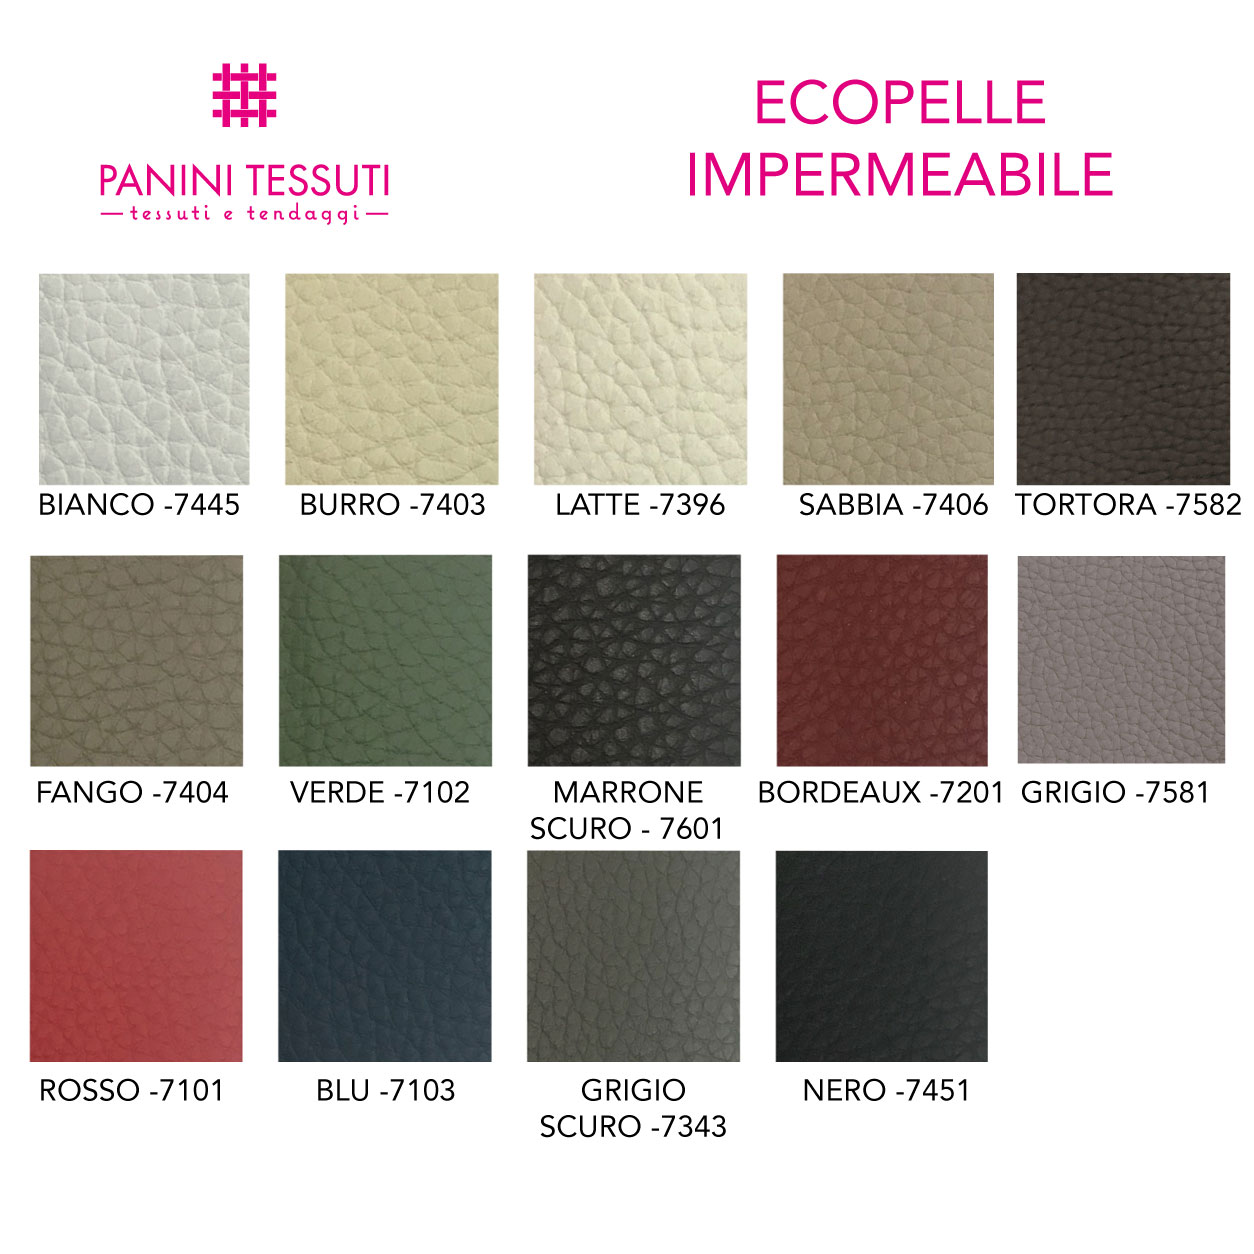 Ecopelle impermeabile cartella colore shopware (1)